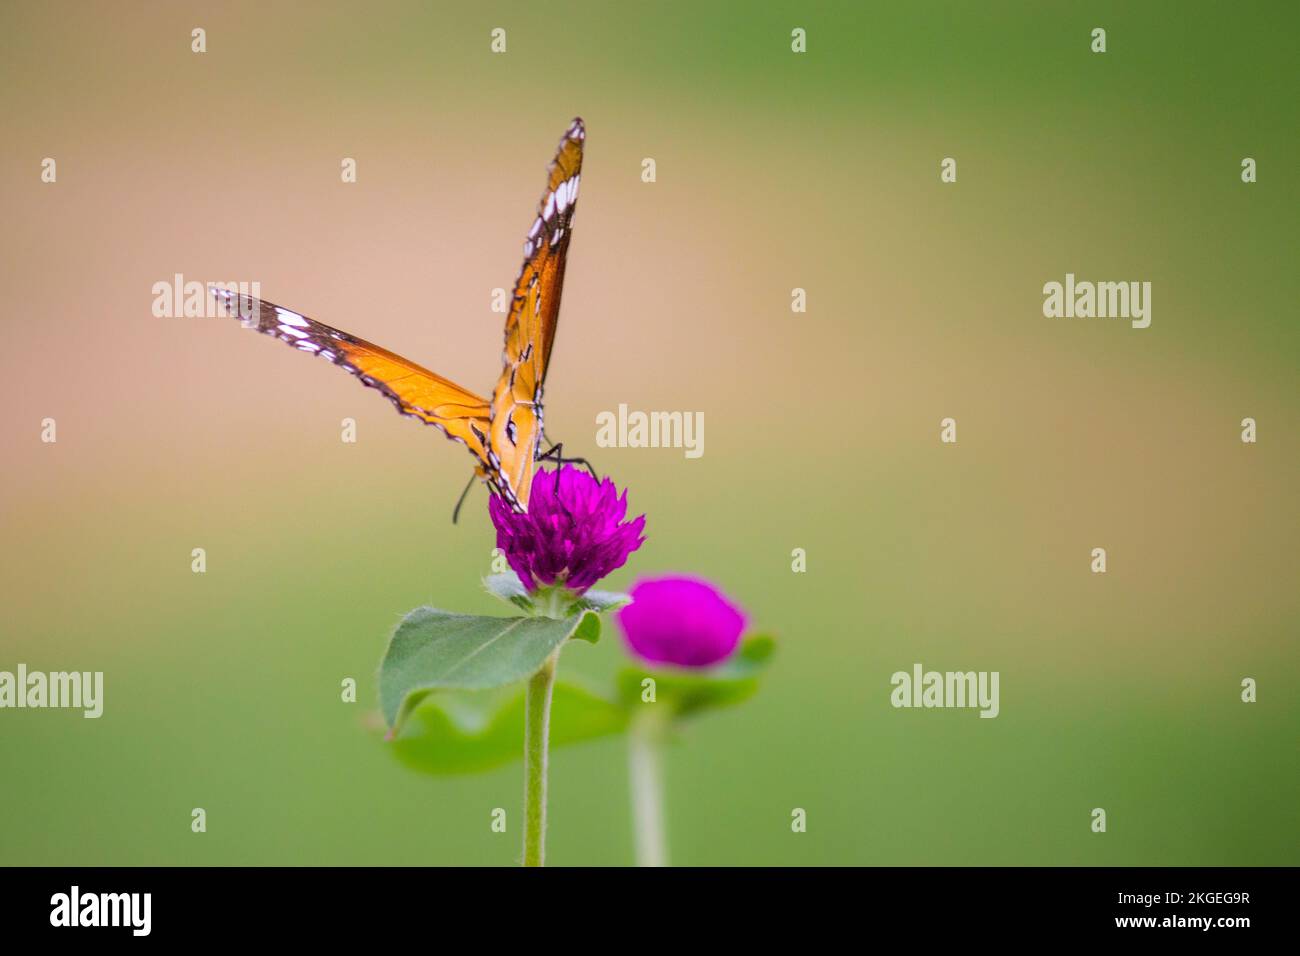 Einfacher Tiger (Danaus chrysippus) Schmetterling auf der Blütenpflanze mit weit geöffneten Flügeln vor einem schönen, weichen, grünen, verschwommenen Hintergrund Stockfoto